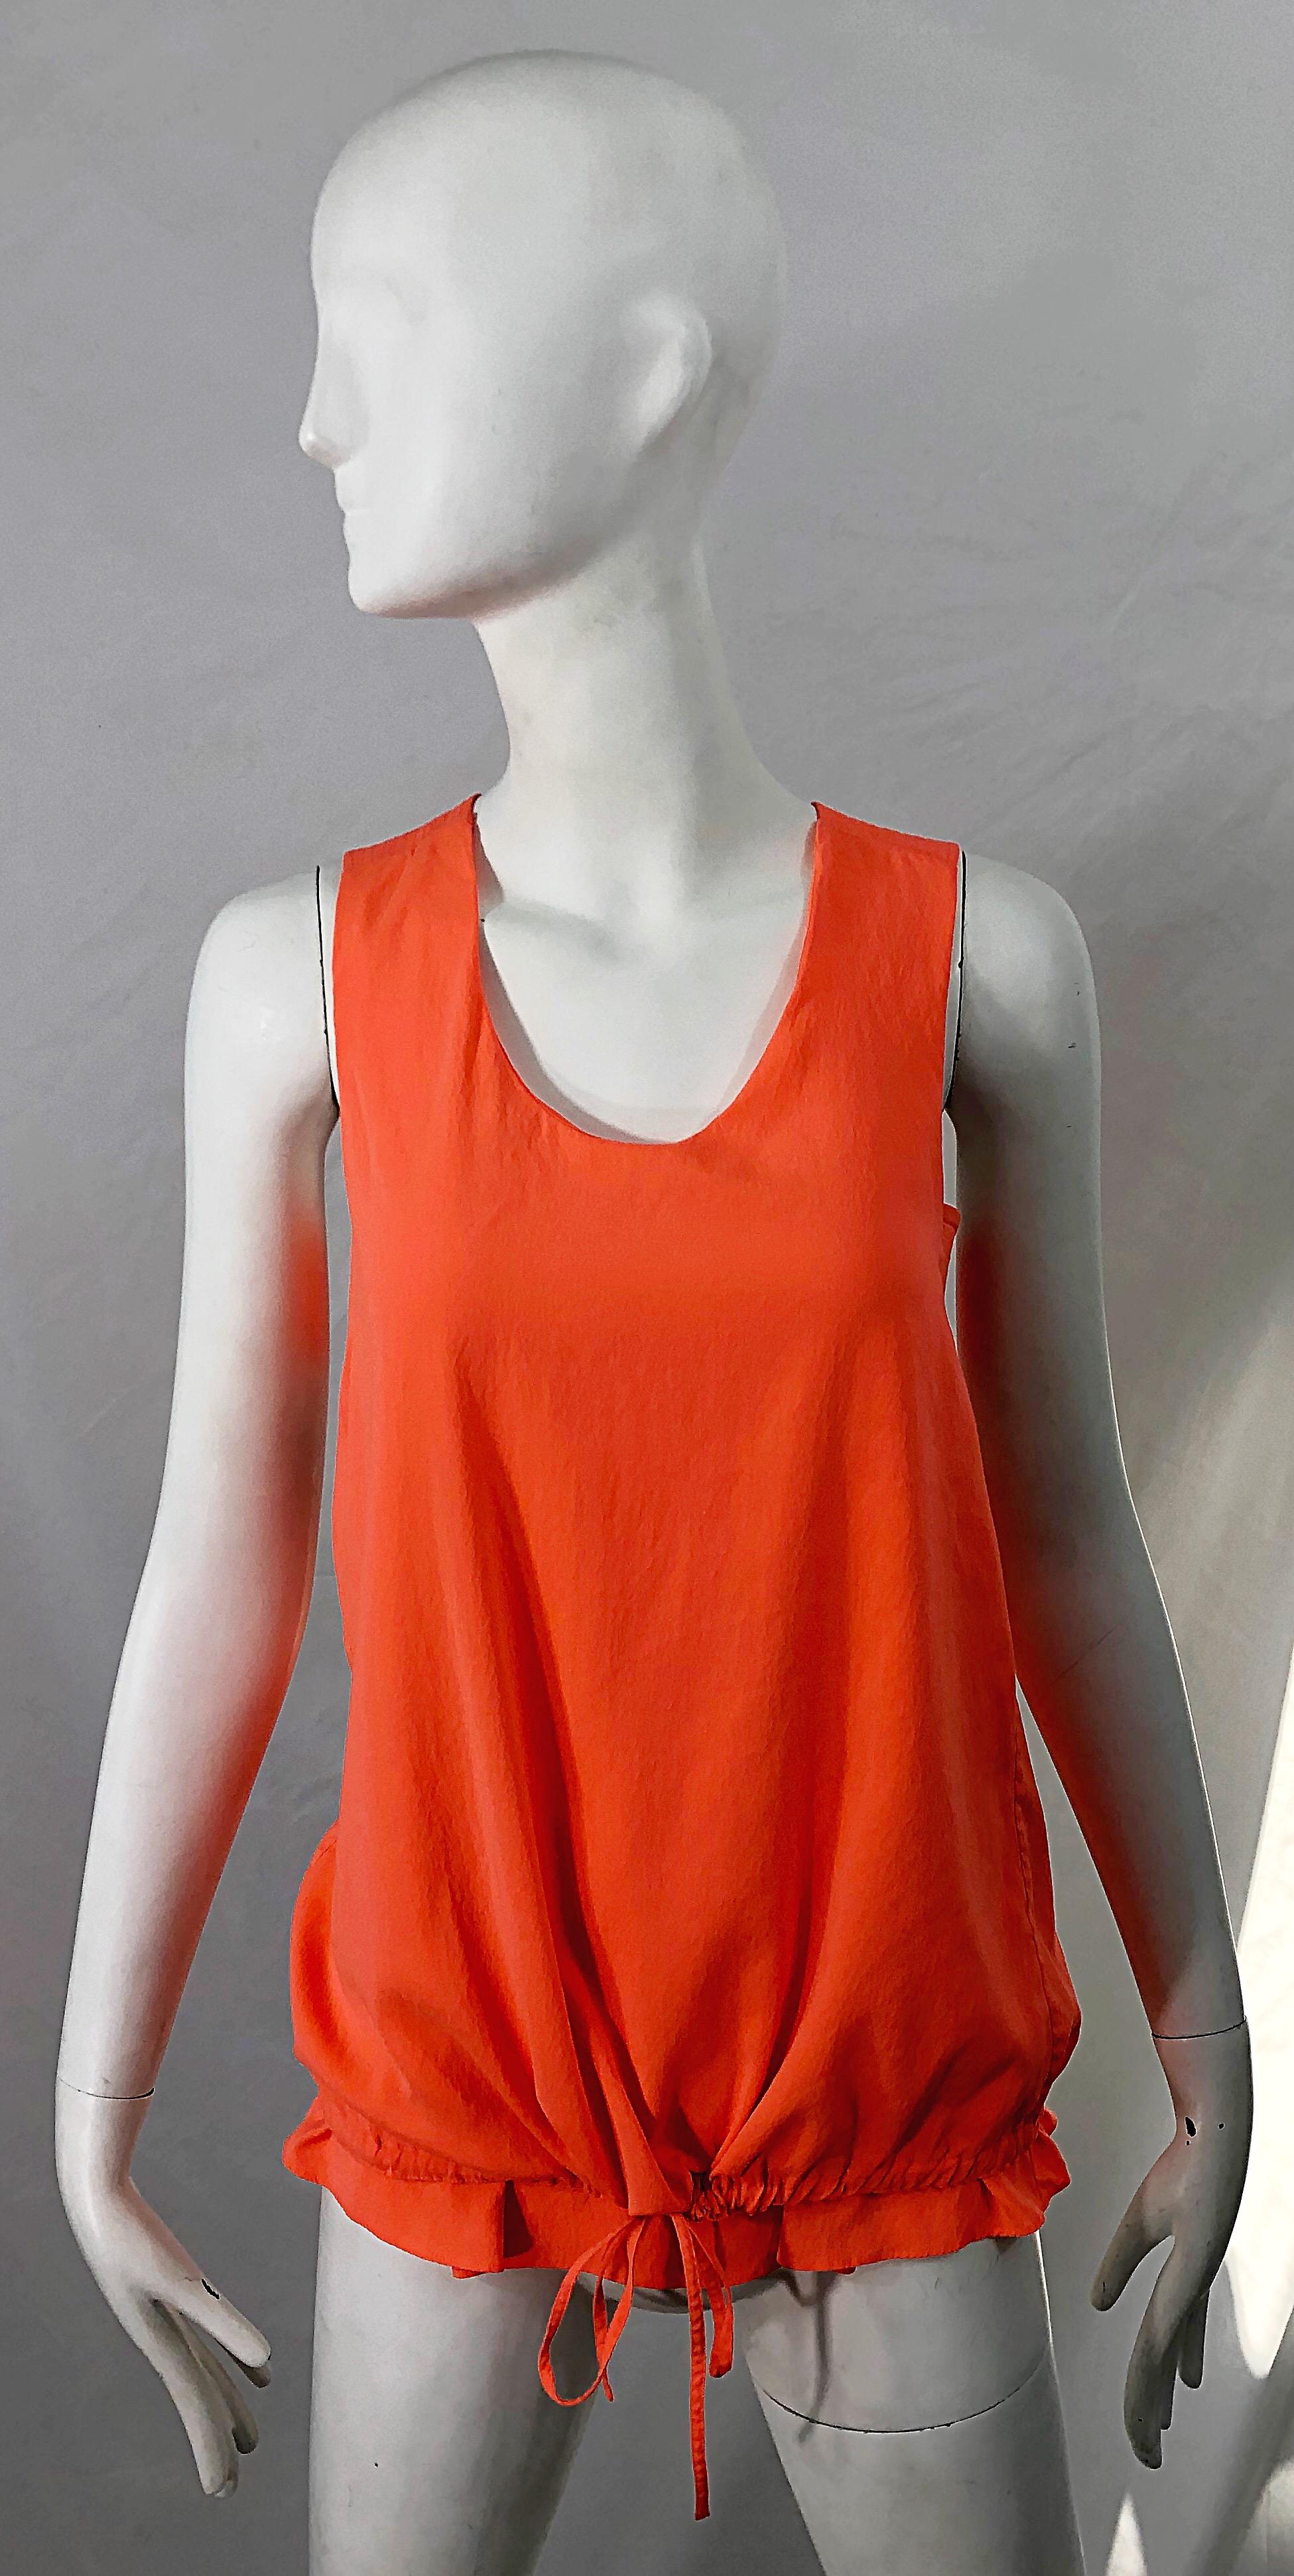 Magnifique chemise sans manches en soie CHLOE by CLARE WAIGHT KELLER ' Orange Fizz ' ! Une couleur orange vibrante sur un luxueux tissu en soie (92%) et élasthanne (8%). Style dos nageur avec des bandes à chaque ouverture de manche. Le cordon de